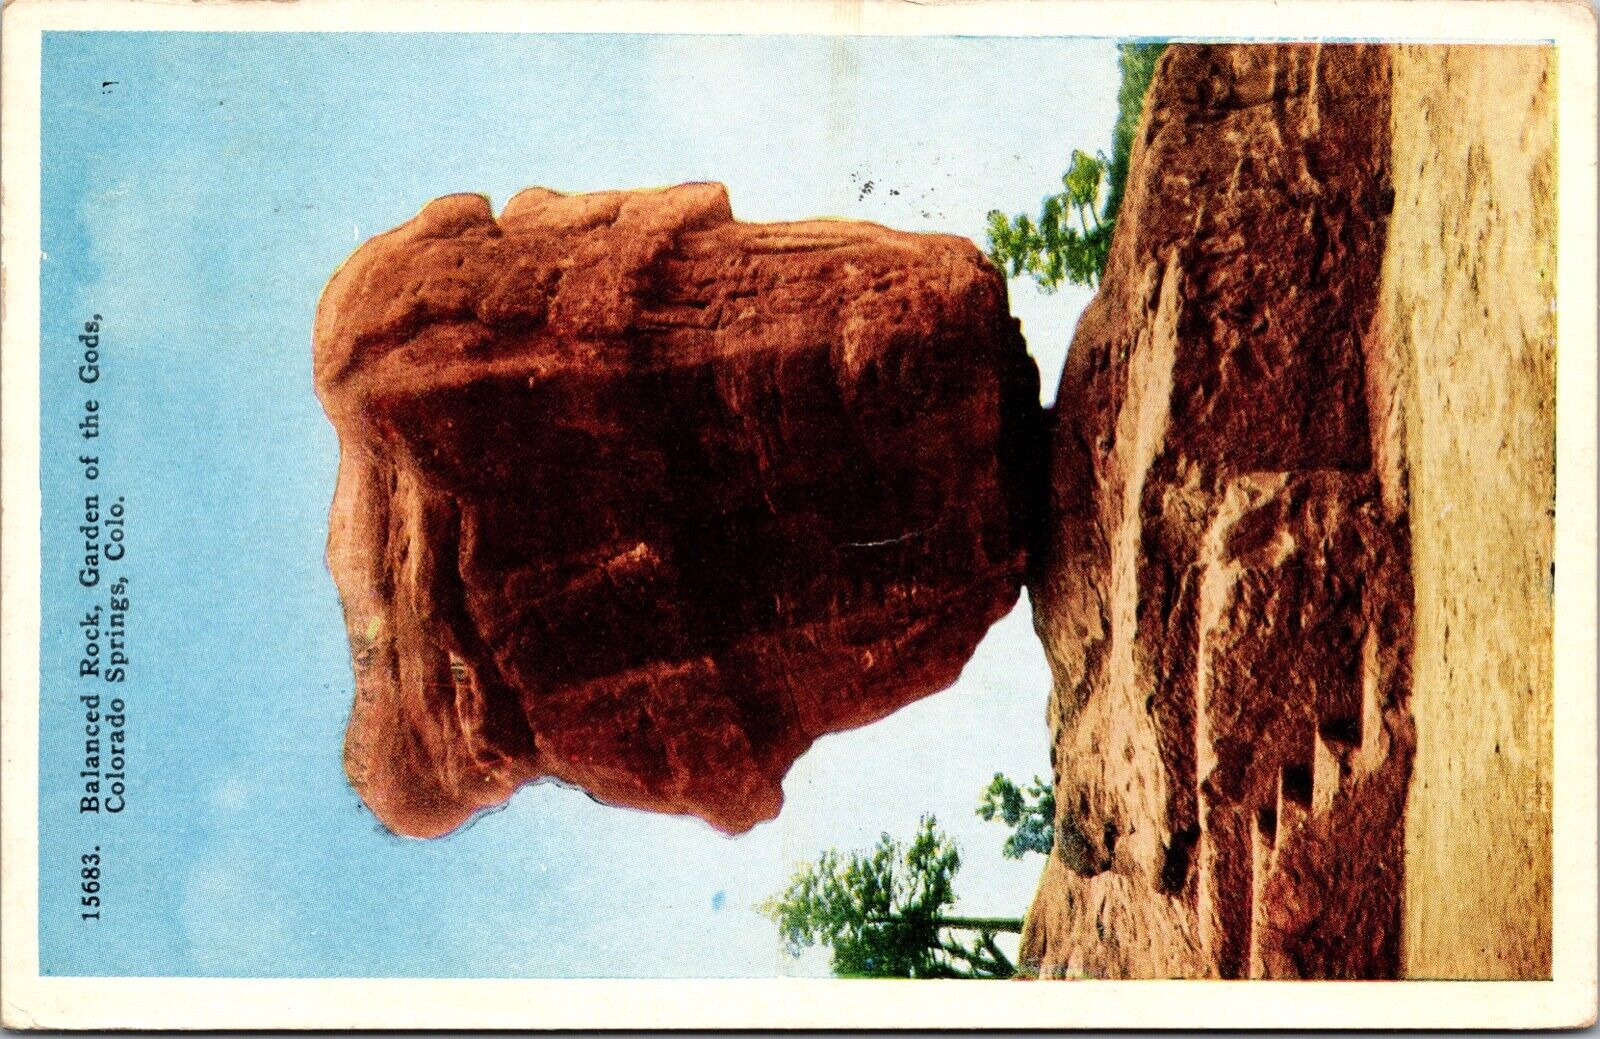 Balanced Rock Garden of the Gods Colorado Springs Colorado Postcard